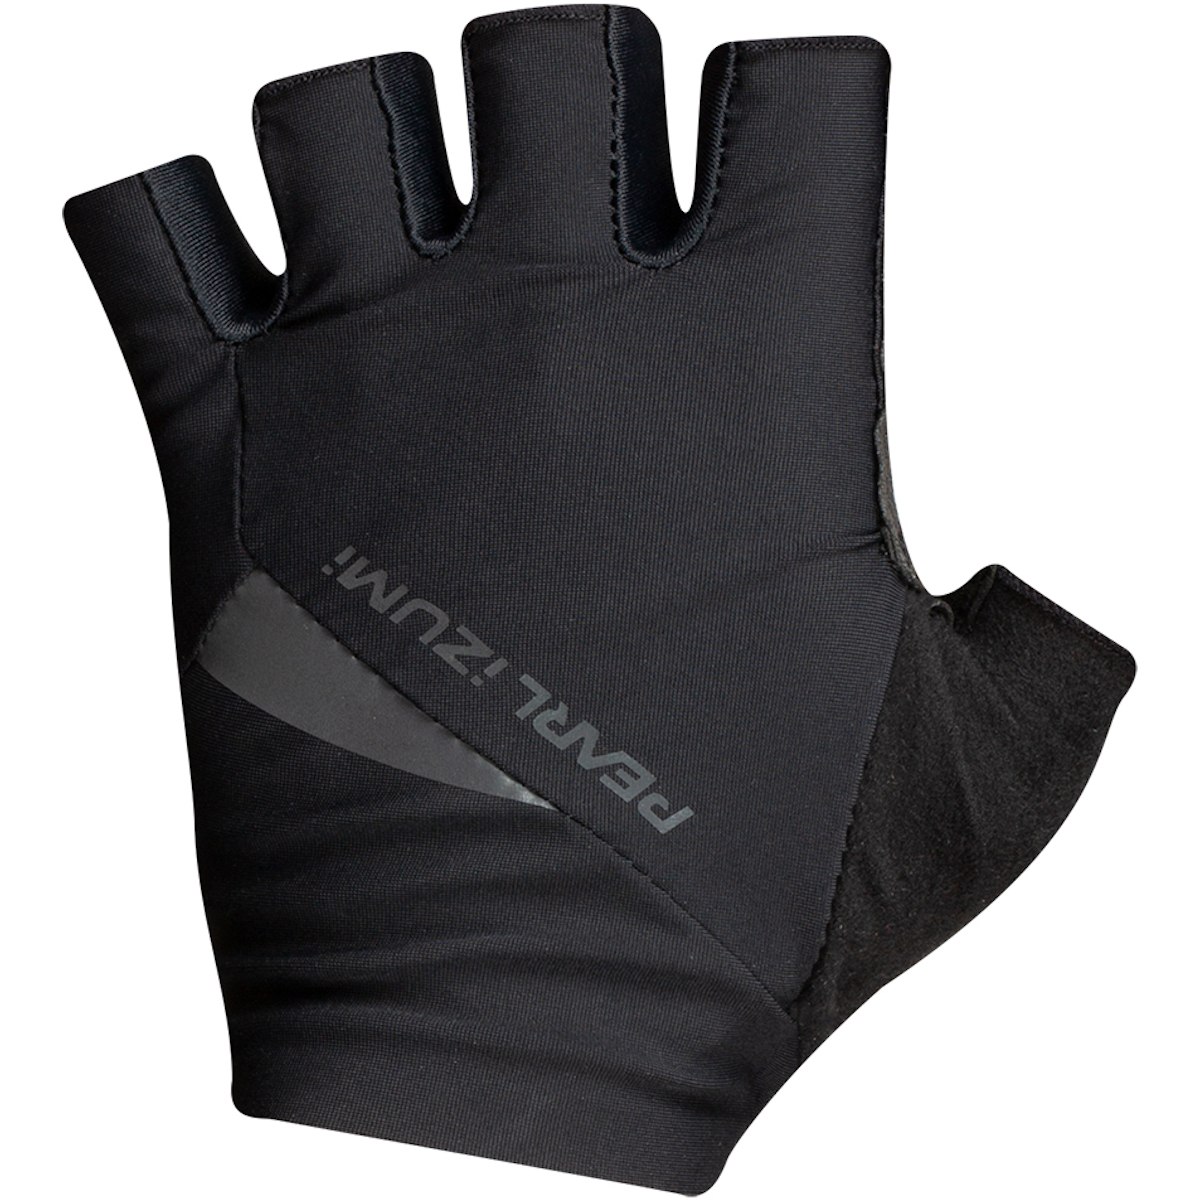 Produktbild von PEARL iZUMi P.R.O. Gel Kurzfinger-Handschuhe Damen 14242004 - schwarz - 021